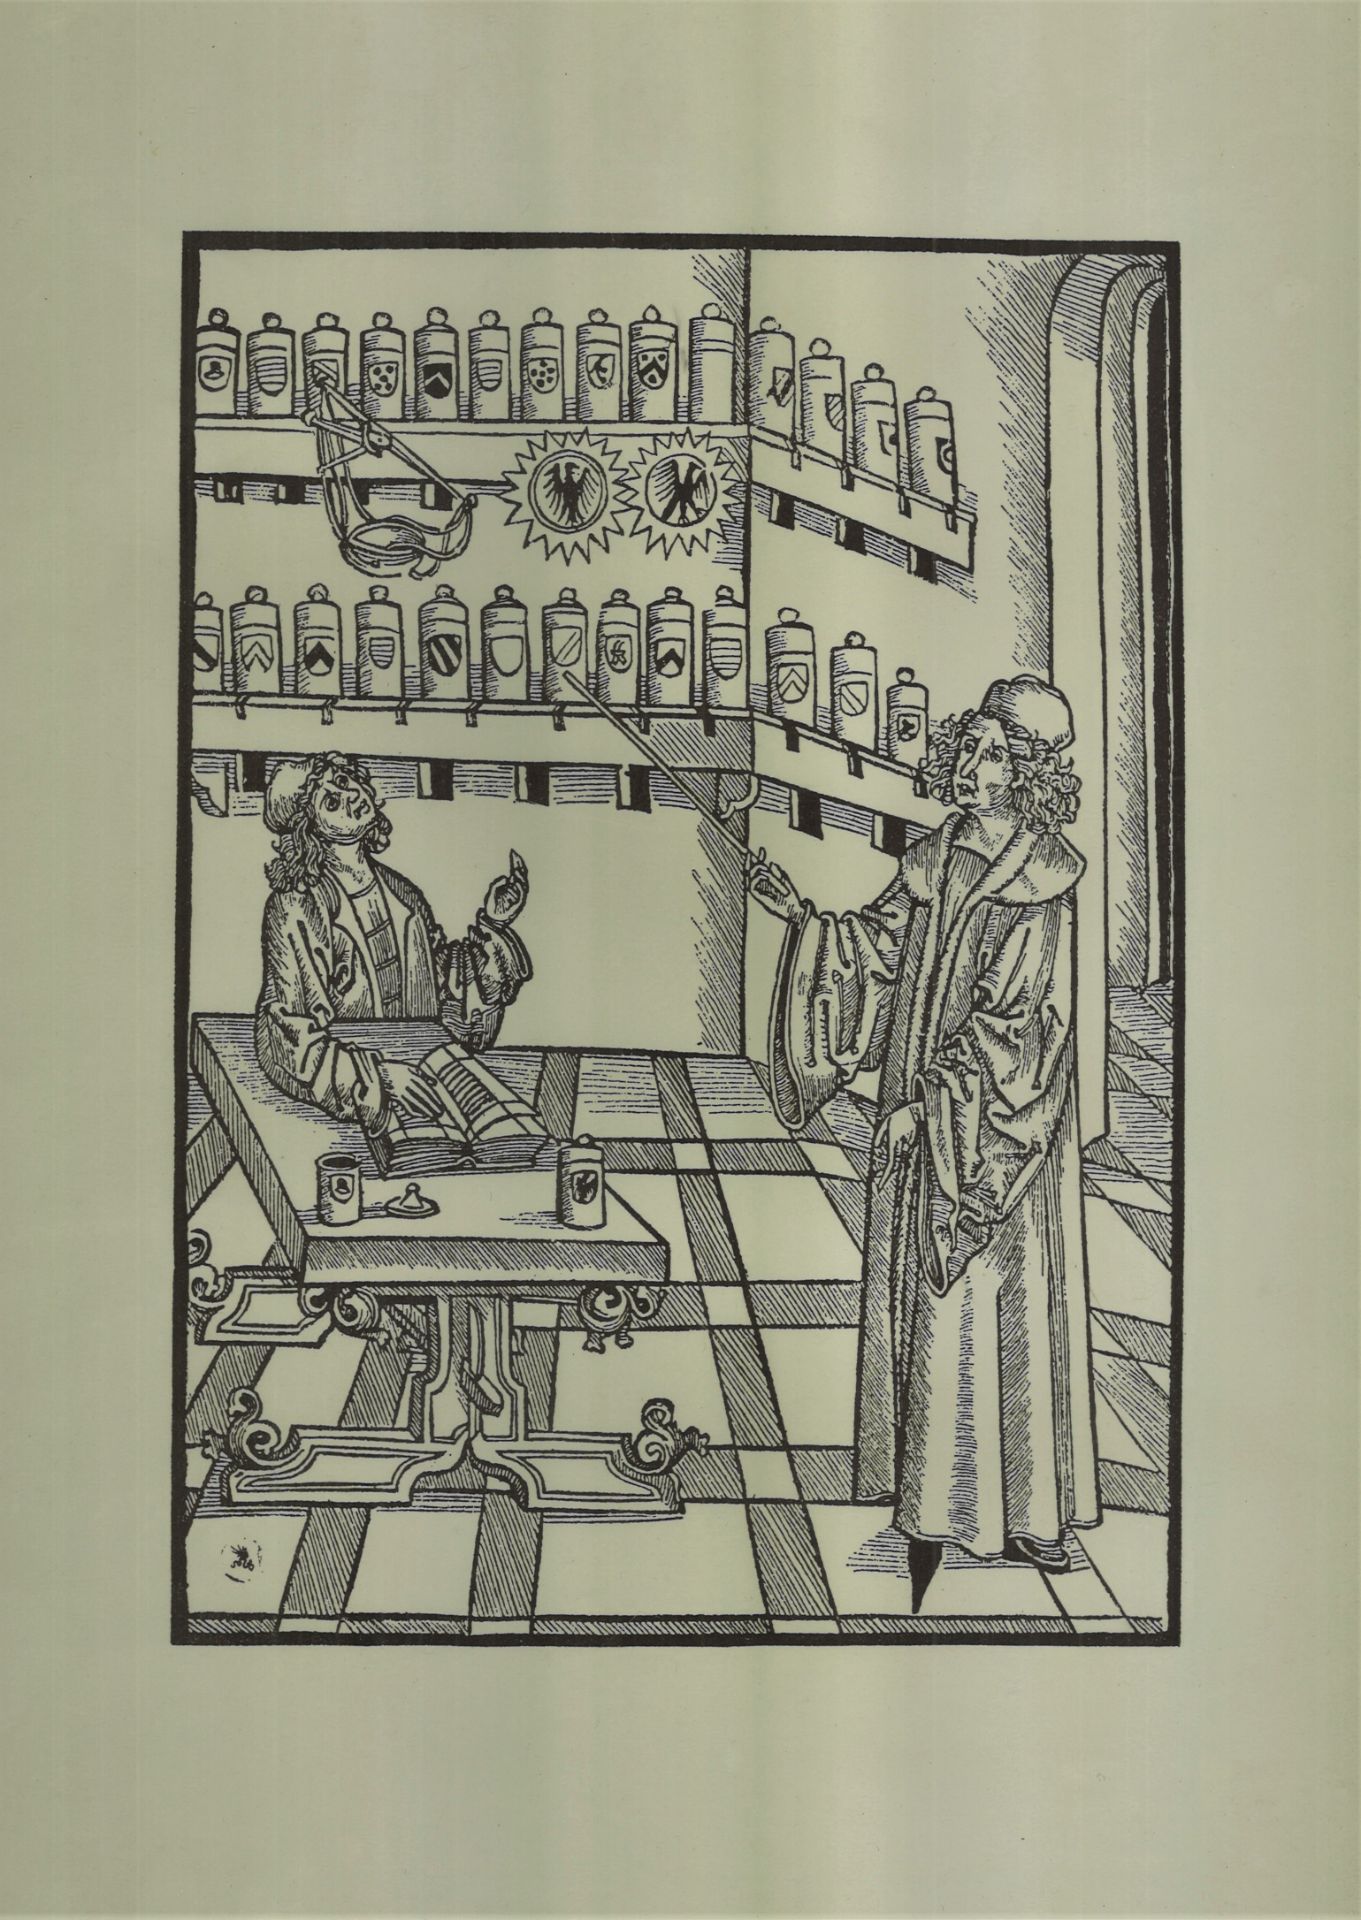 Holzschnitt aus H. Brunschvig, Apothekerbuch. Straßburg, 1500. "Arzt, in der Apotheke